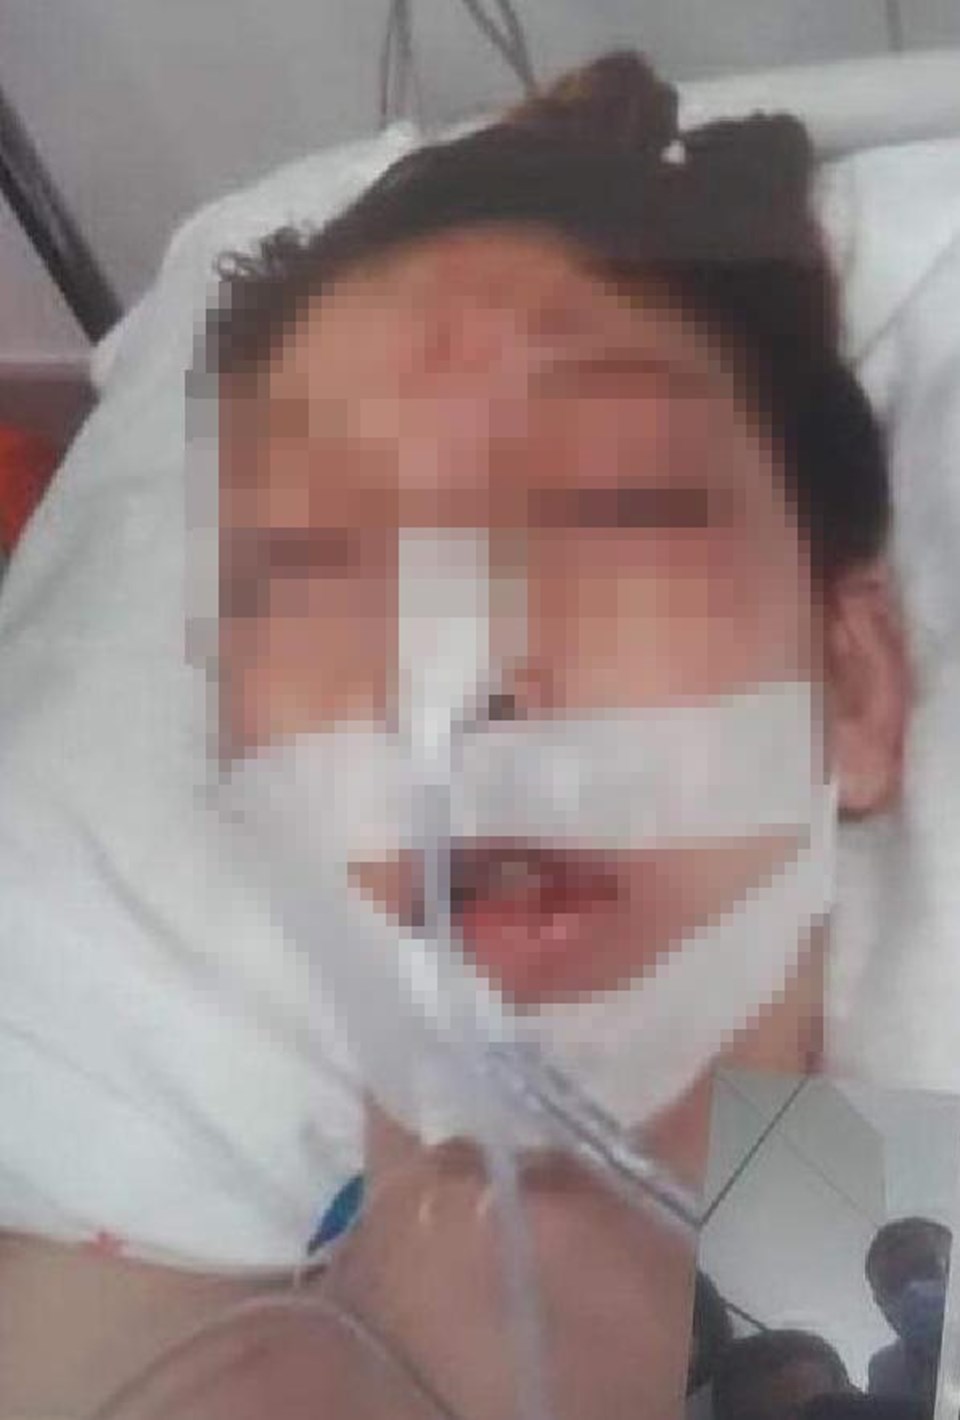 Cinsel istismara kalkıştığı kızı ağır yaraladı: Kızım hastanede can çekişiyor - 2